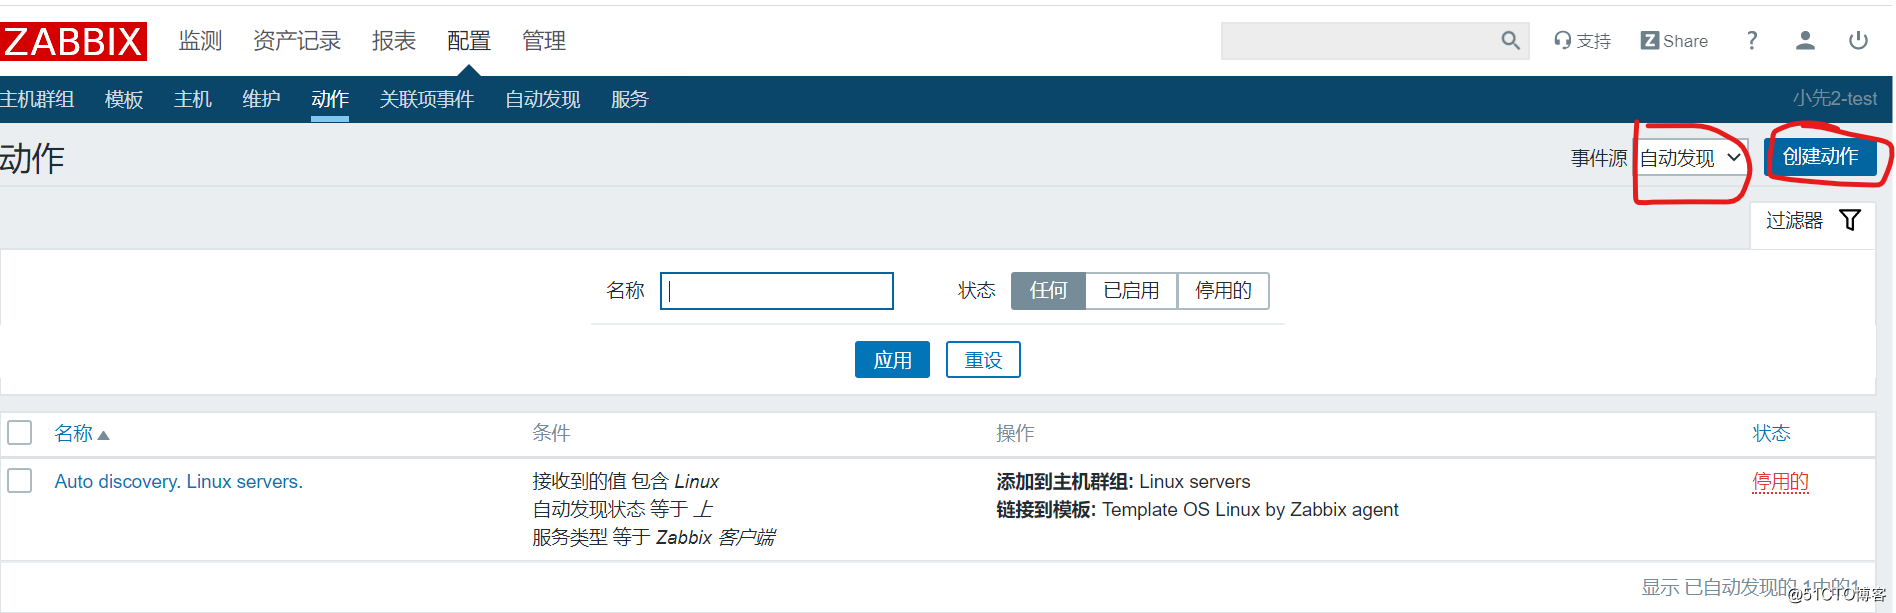 zabbix4.4 自动发现与自动注册